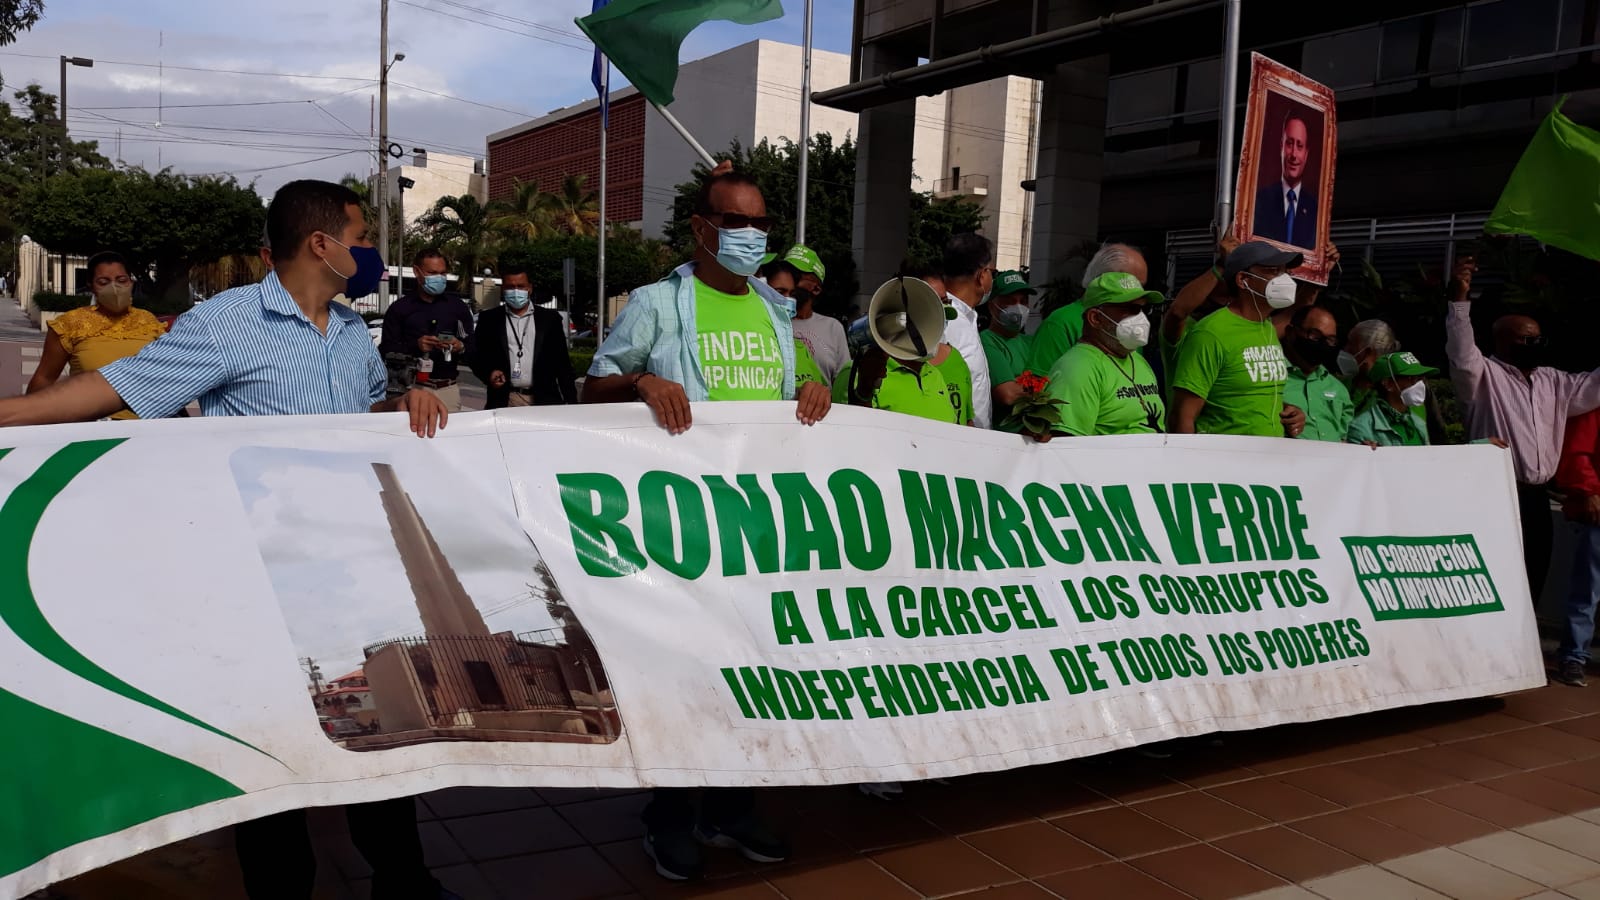 VIDEO | Reaparece "Marcha Verde" satisfecho con el Ministerio Público